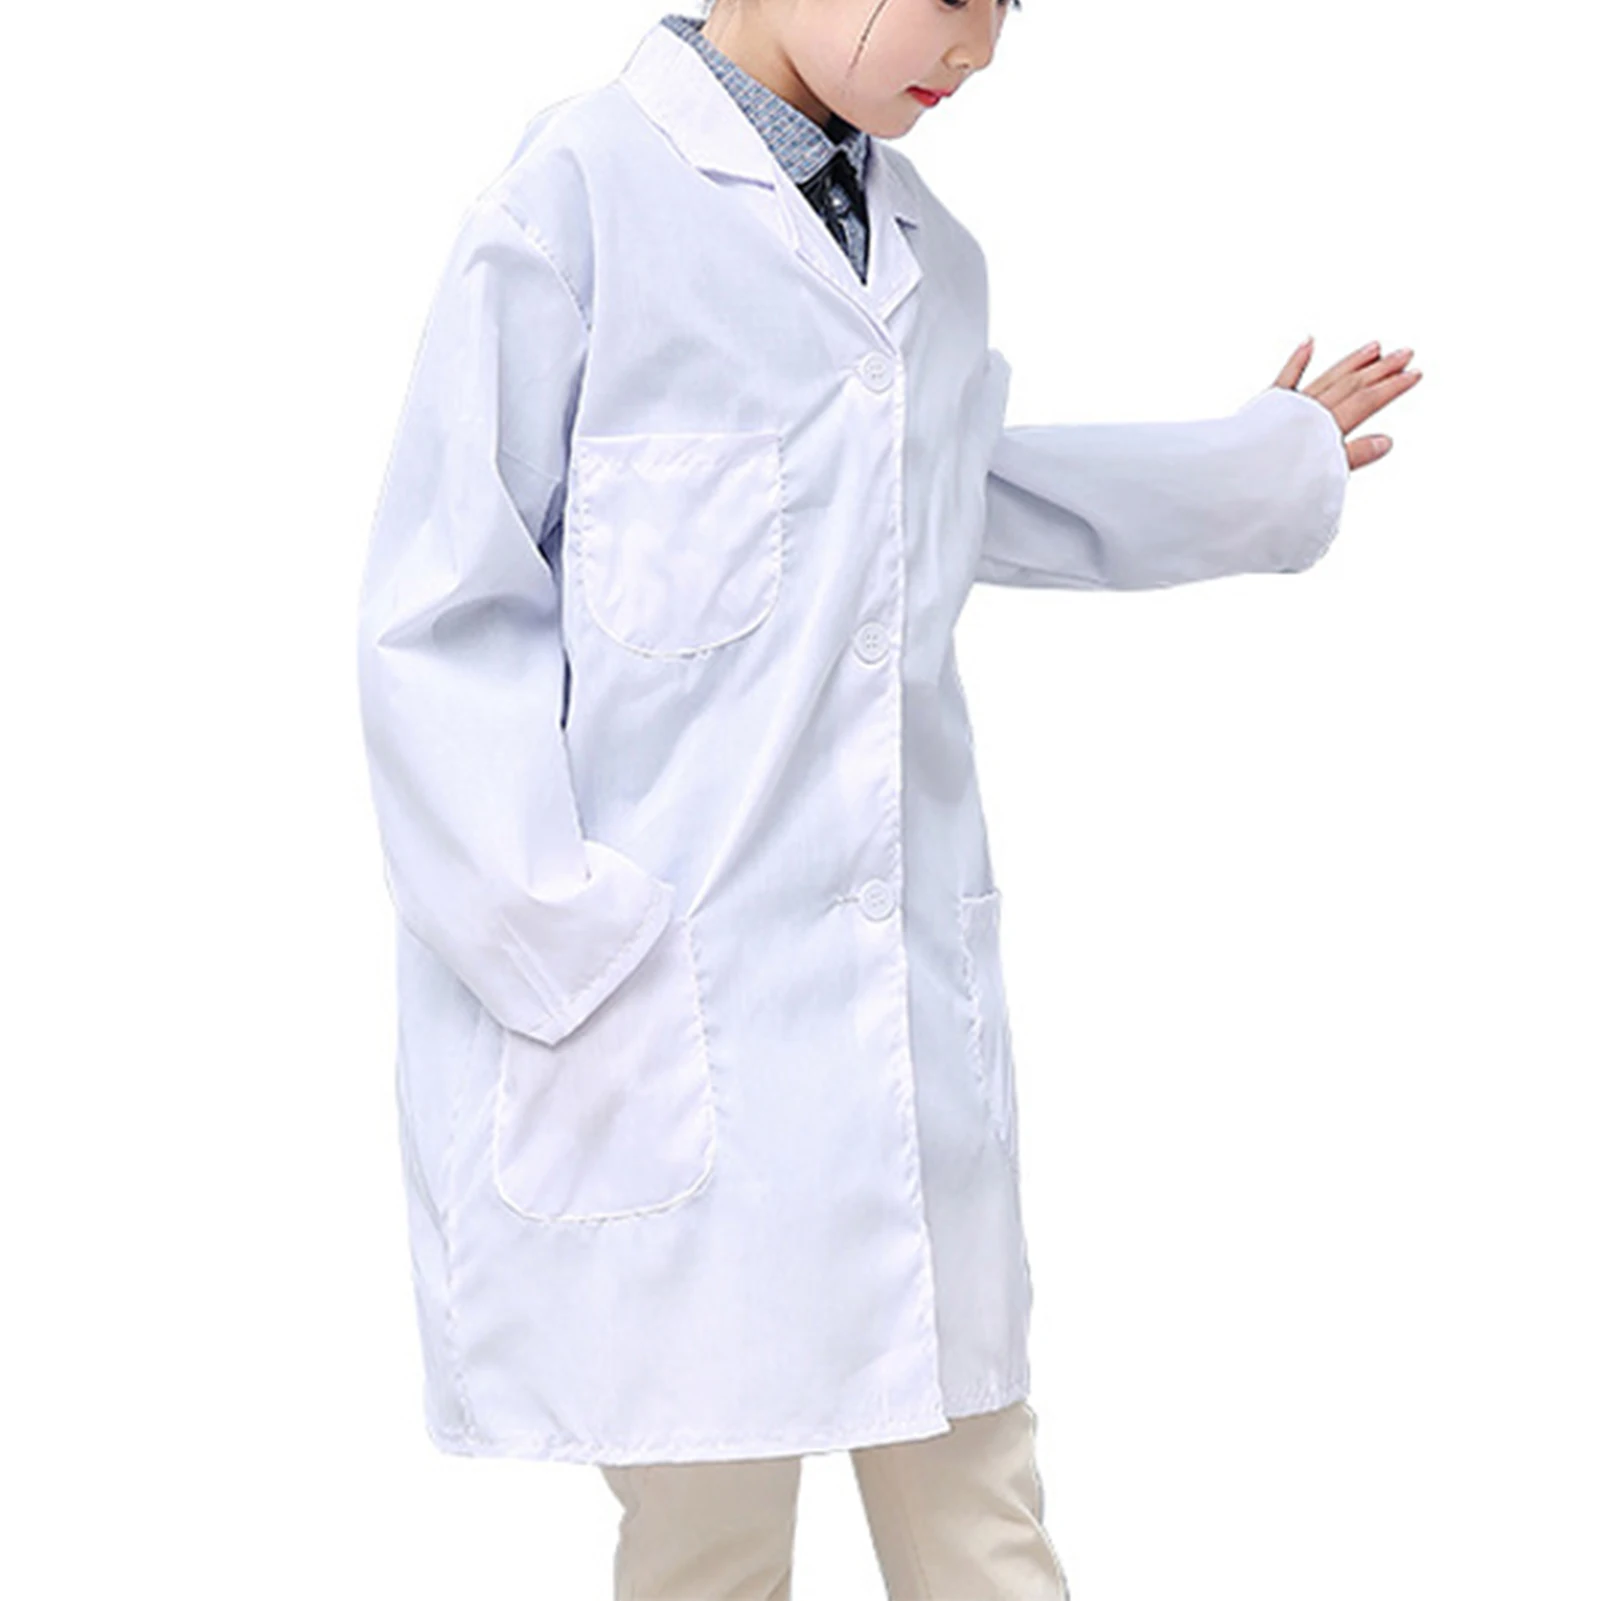 רופא ילדים Cosplay מעיל מעבדה לעזור לילדים ללמוד את הרופא Cosplay המעיל על הבמה ביצועים קוספליי התמונה 5